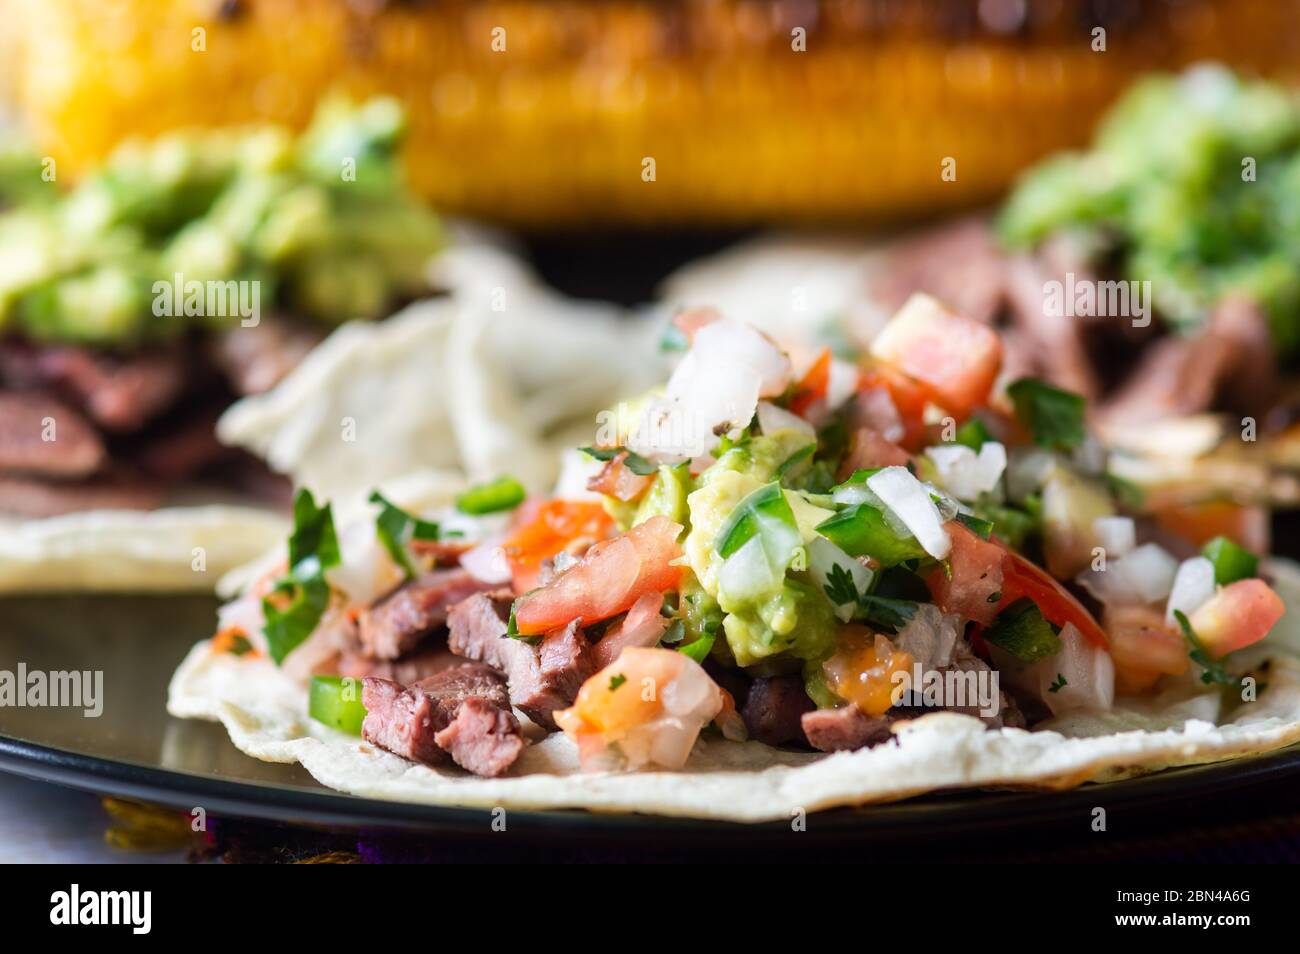 Mexikanische Carne Asada Tacos, buchstäblich gegrilltes Fleisch Tacos. Es handelt sich um gehacktes gegrilltes Rindfleisch, das auf weichen Maiskolben mit Salsa verde und Pico de ga serviert wird Stockfoto